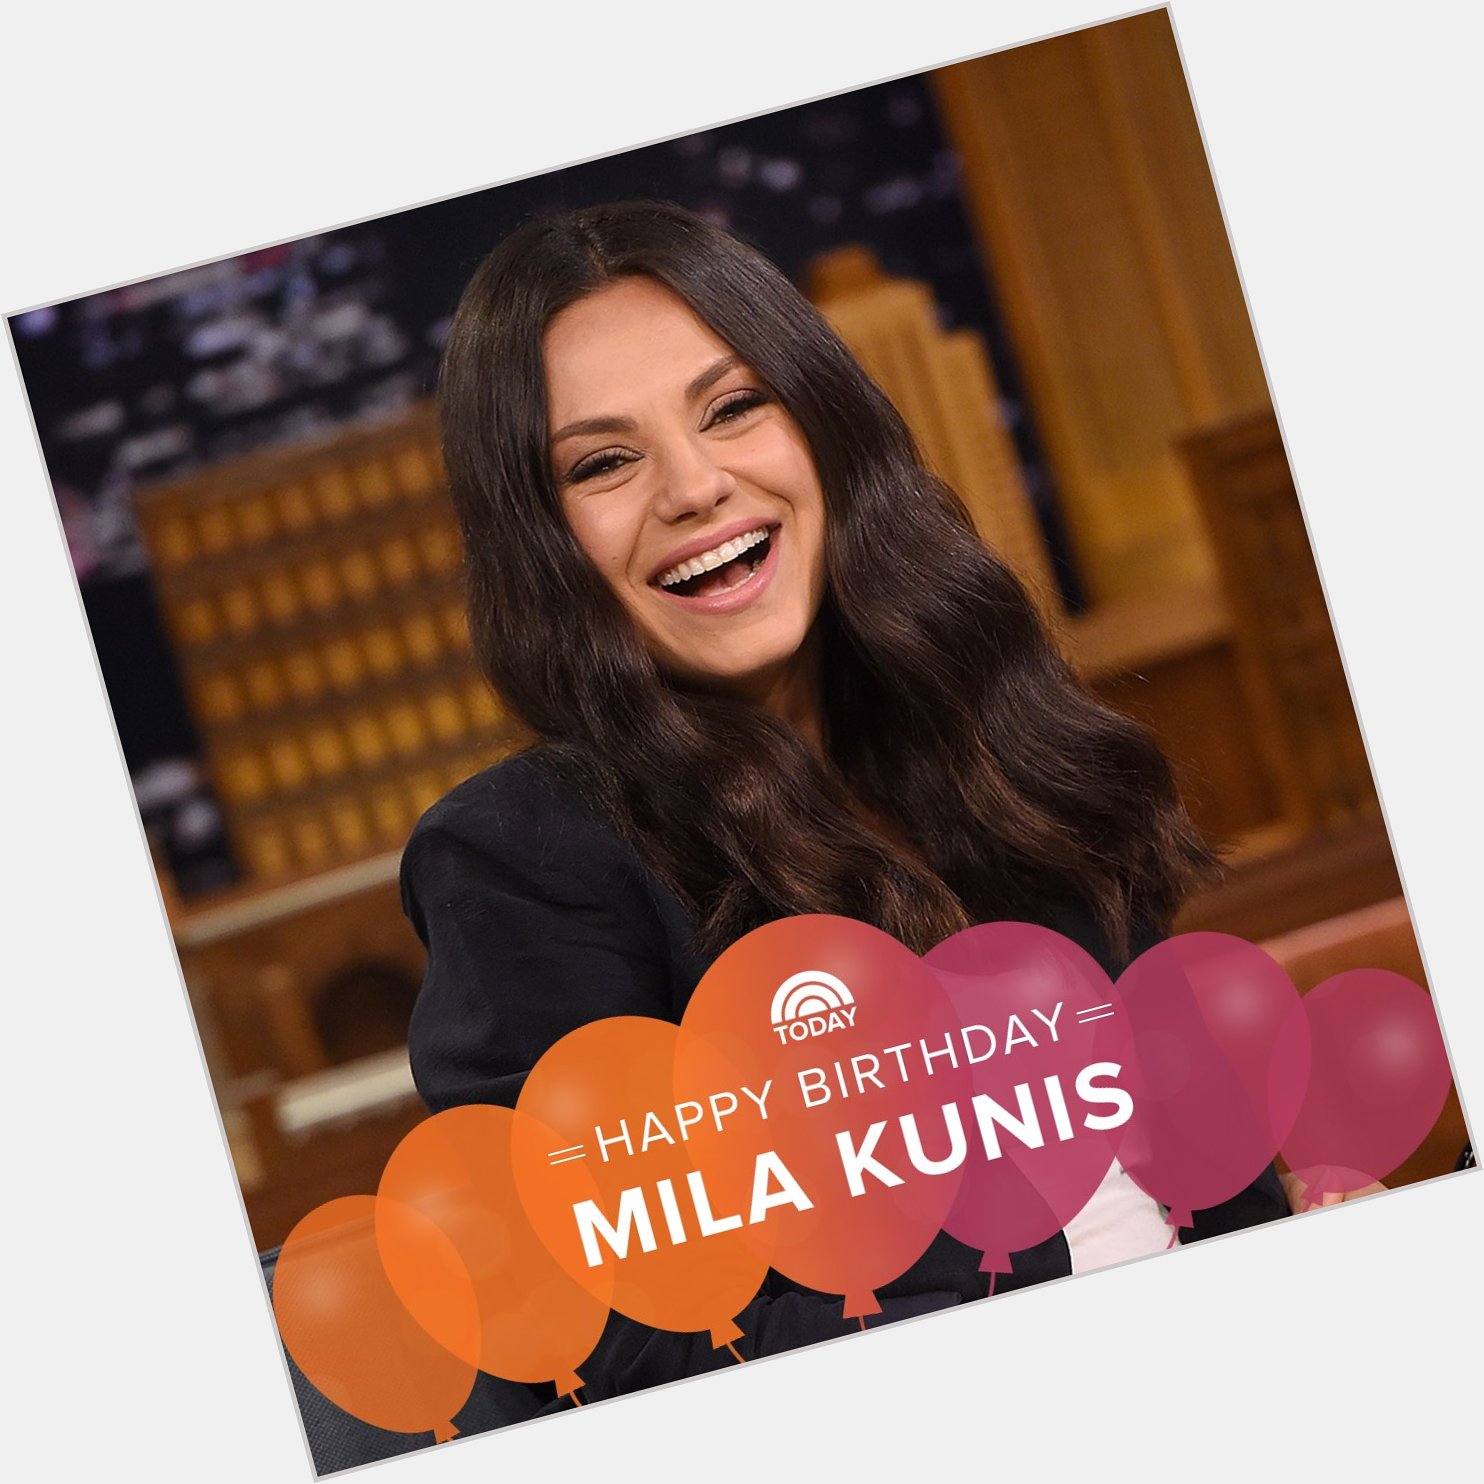 Happy birthday, Mila Kunis! 